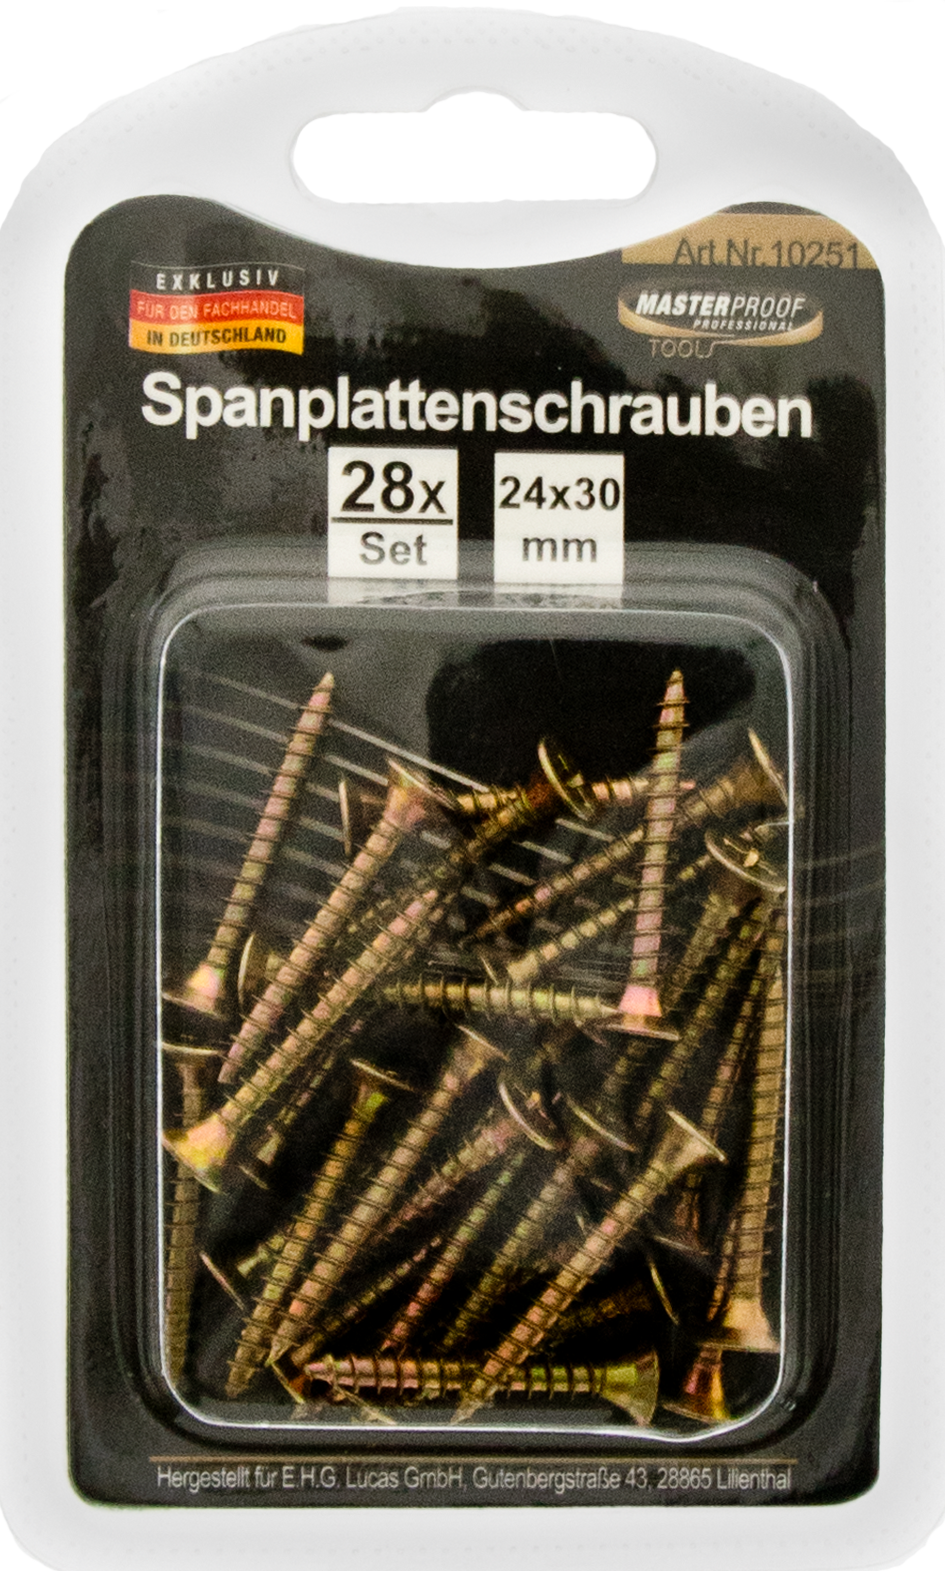 Picture of Spanplattenschrauben 4 x 30mm